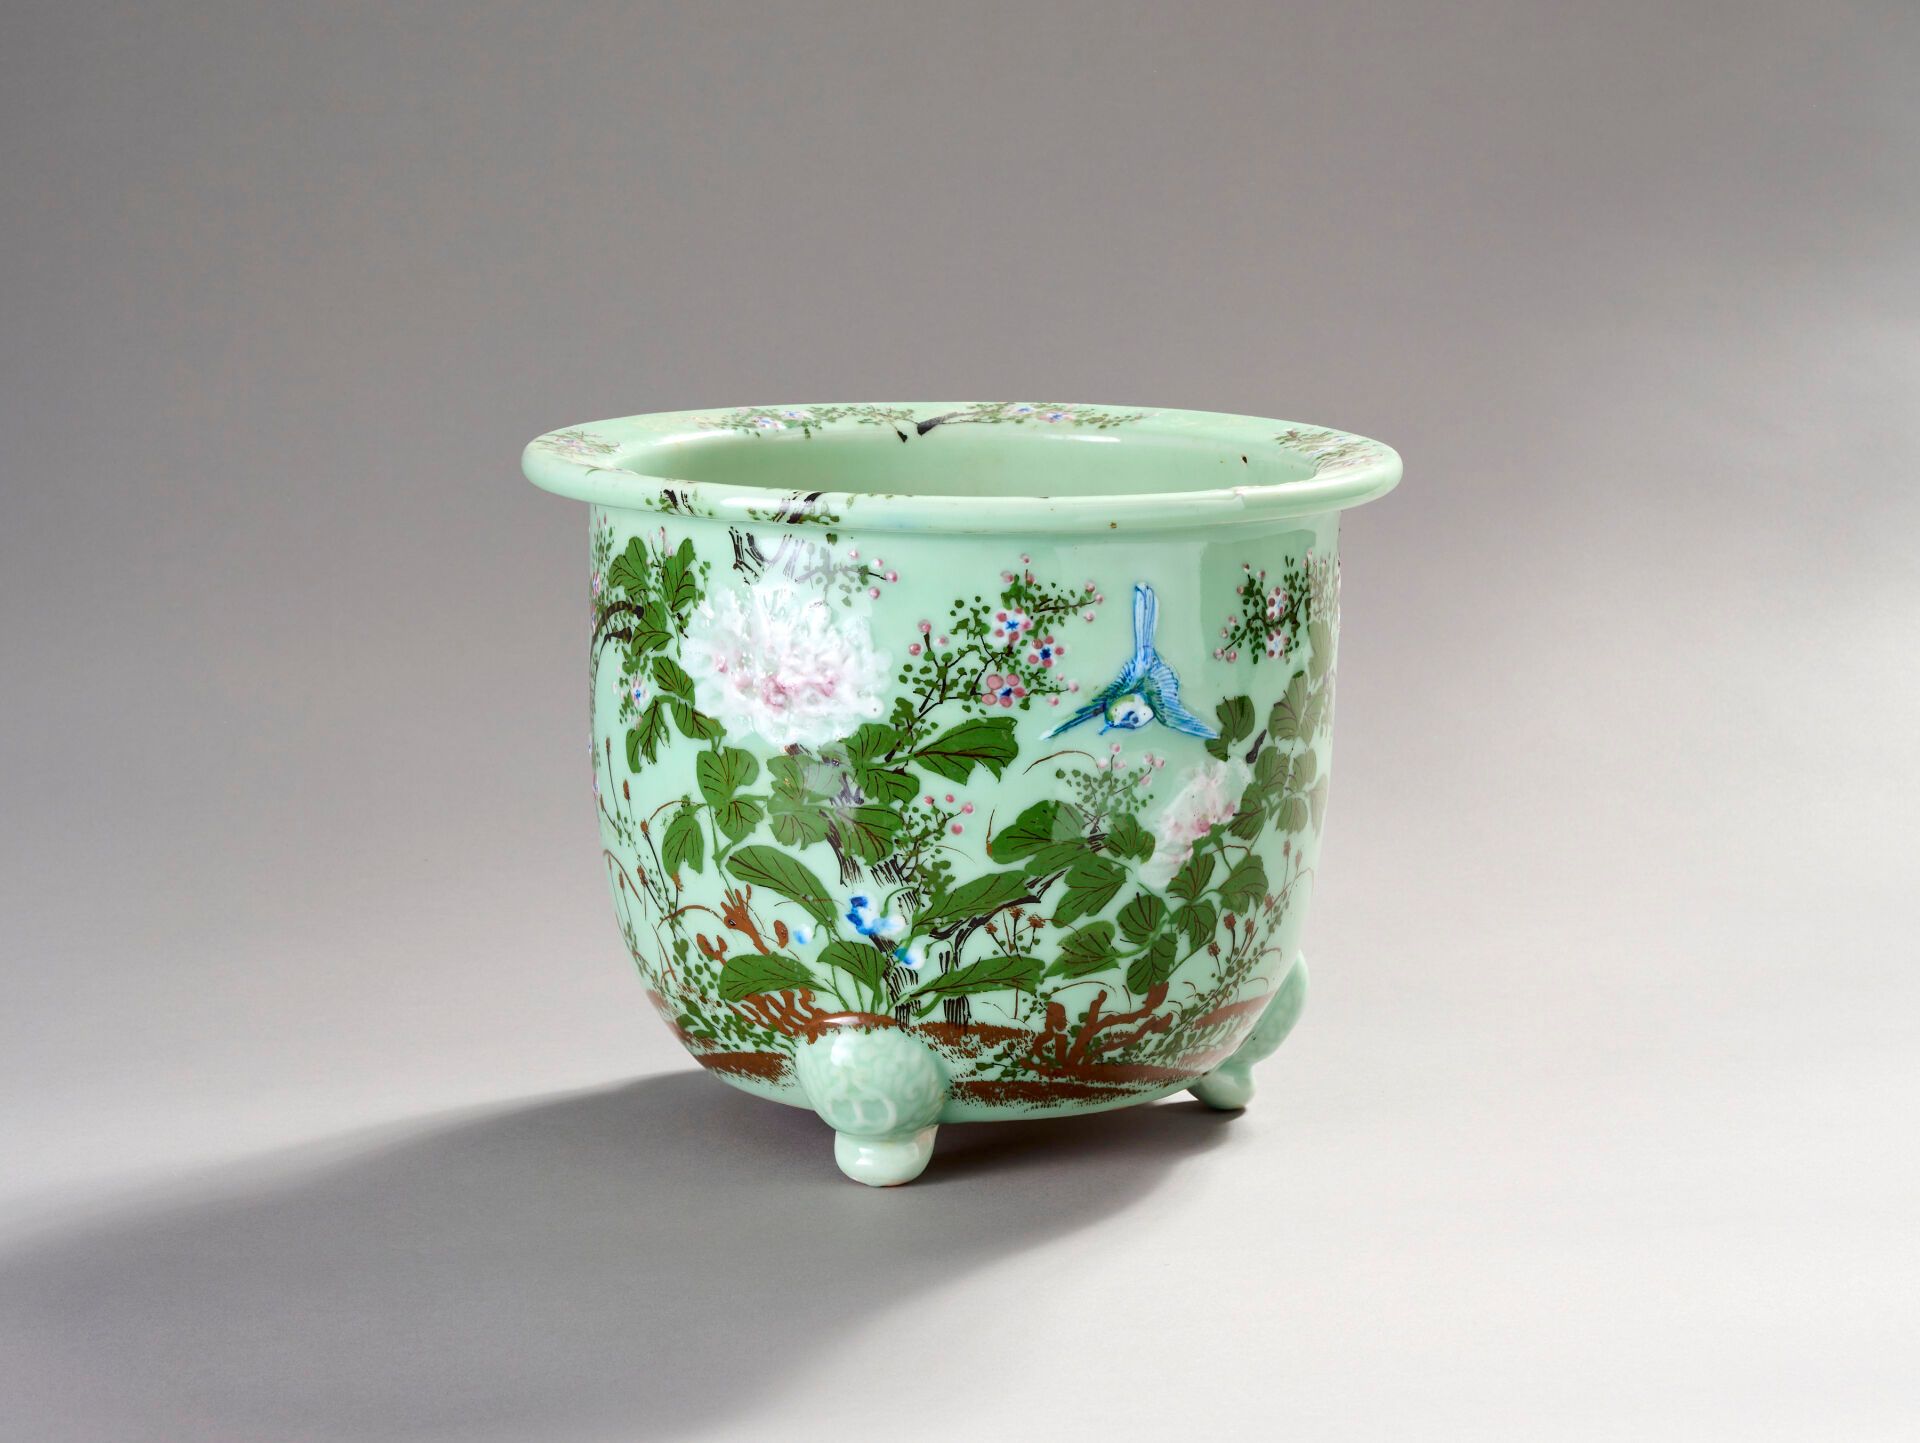 Null 中国或越南
多色瓷罐。
绿色背景上有花朵、叶子和鸟。
立于三只造型脚上。 
有穿孔。 
高度：26 厘米。直径：32.5 厘米。